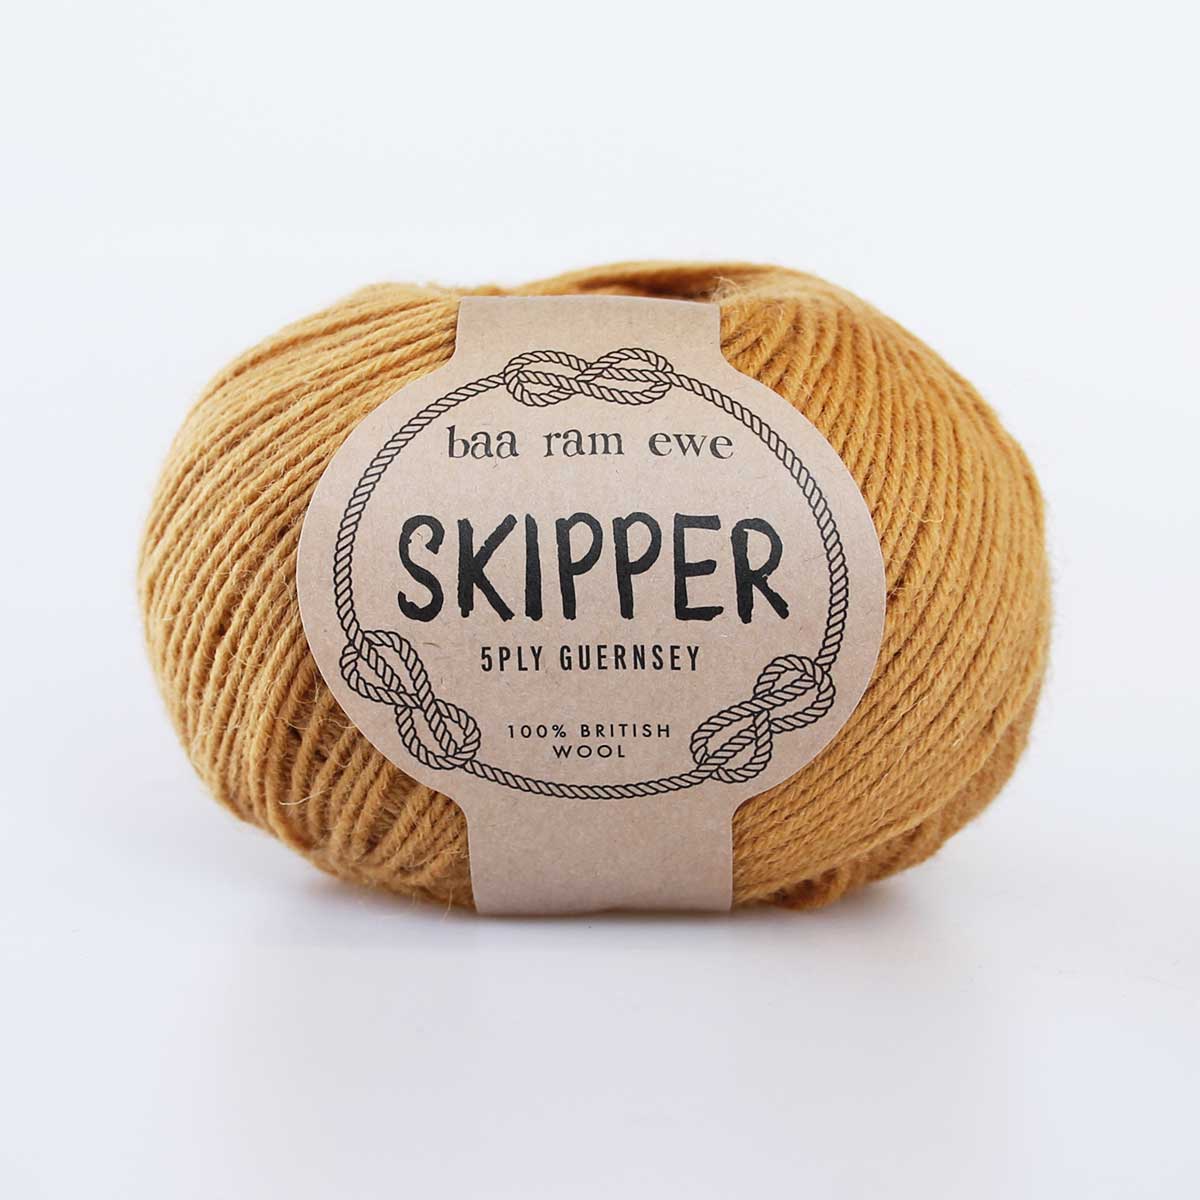 Skipper 5ply Guernsey: 100% British Wool